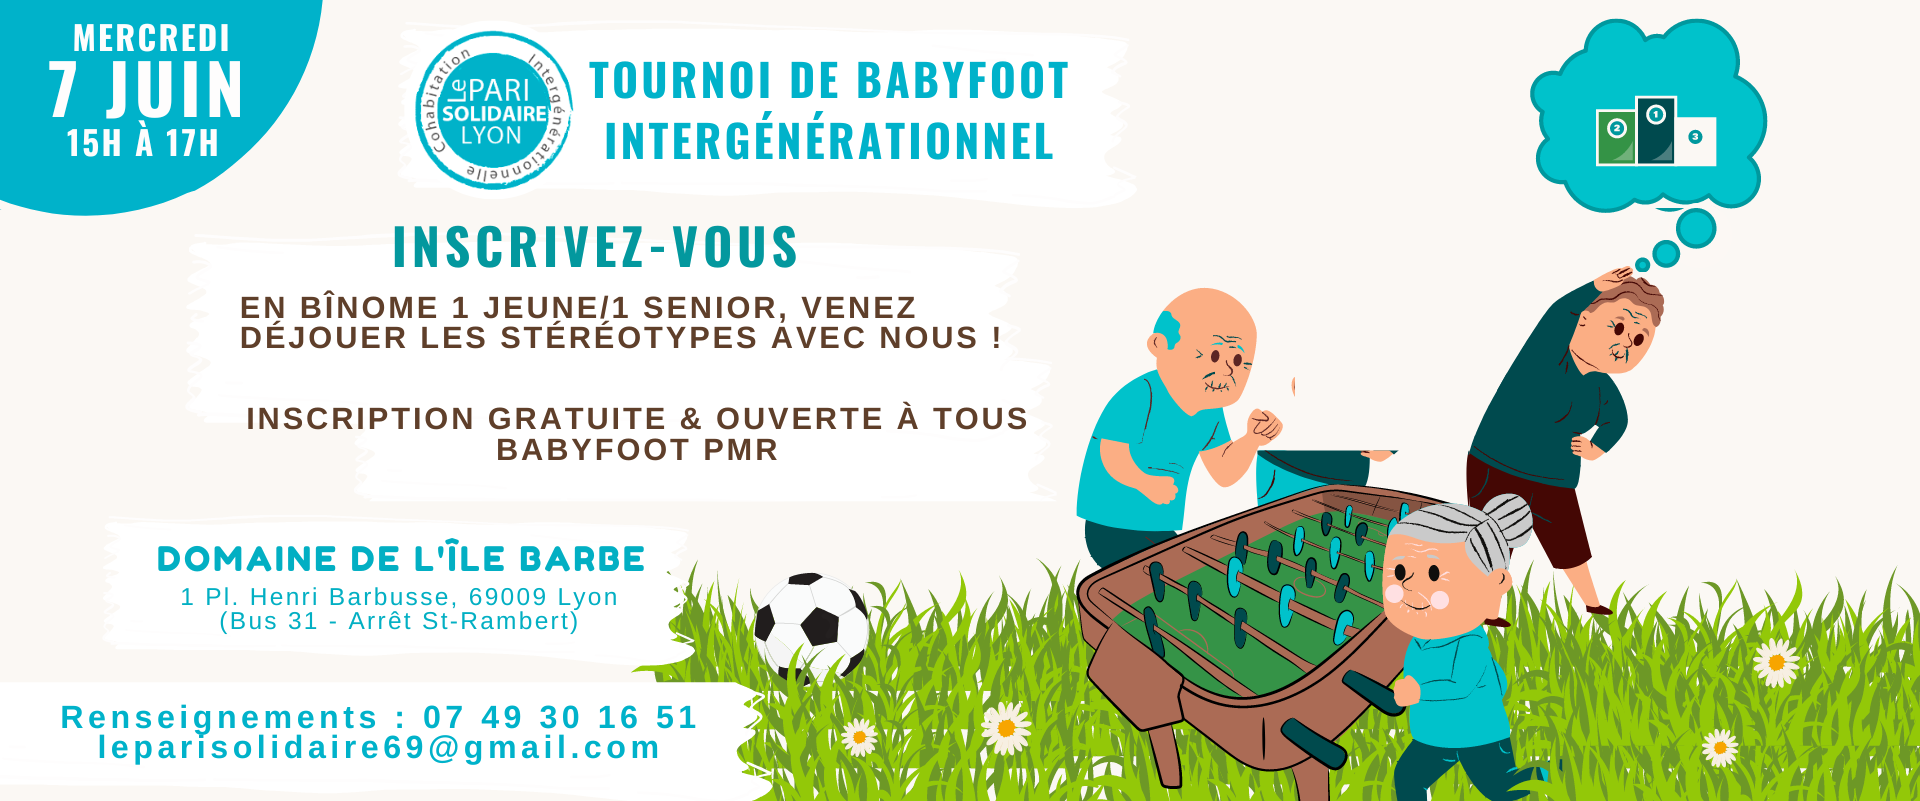 Affiche de notre tournoi de babyfoot intergénérationnel qui se déroulera le 7 juin 2023 à 15h au musée Jean Couty. Accessible PMR.